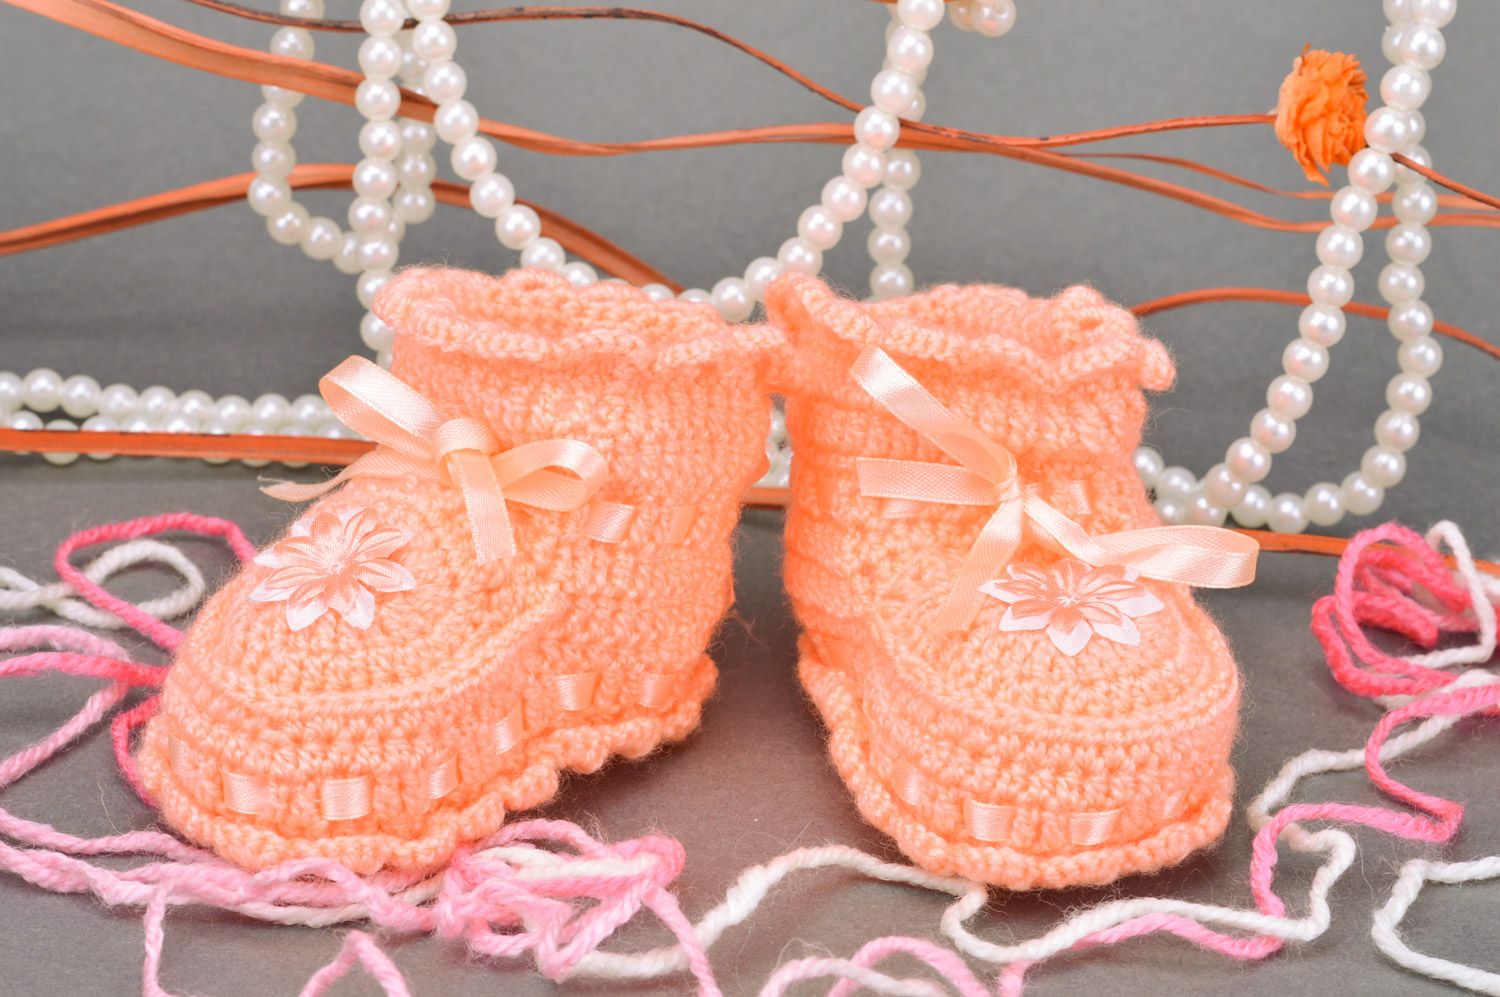 Chaussons de bébé orange en acrylique tricotés au crochet faits main pour fille photo 1